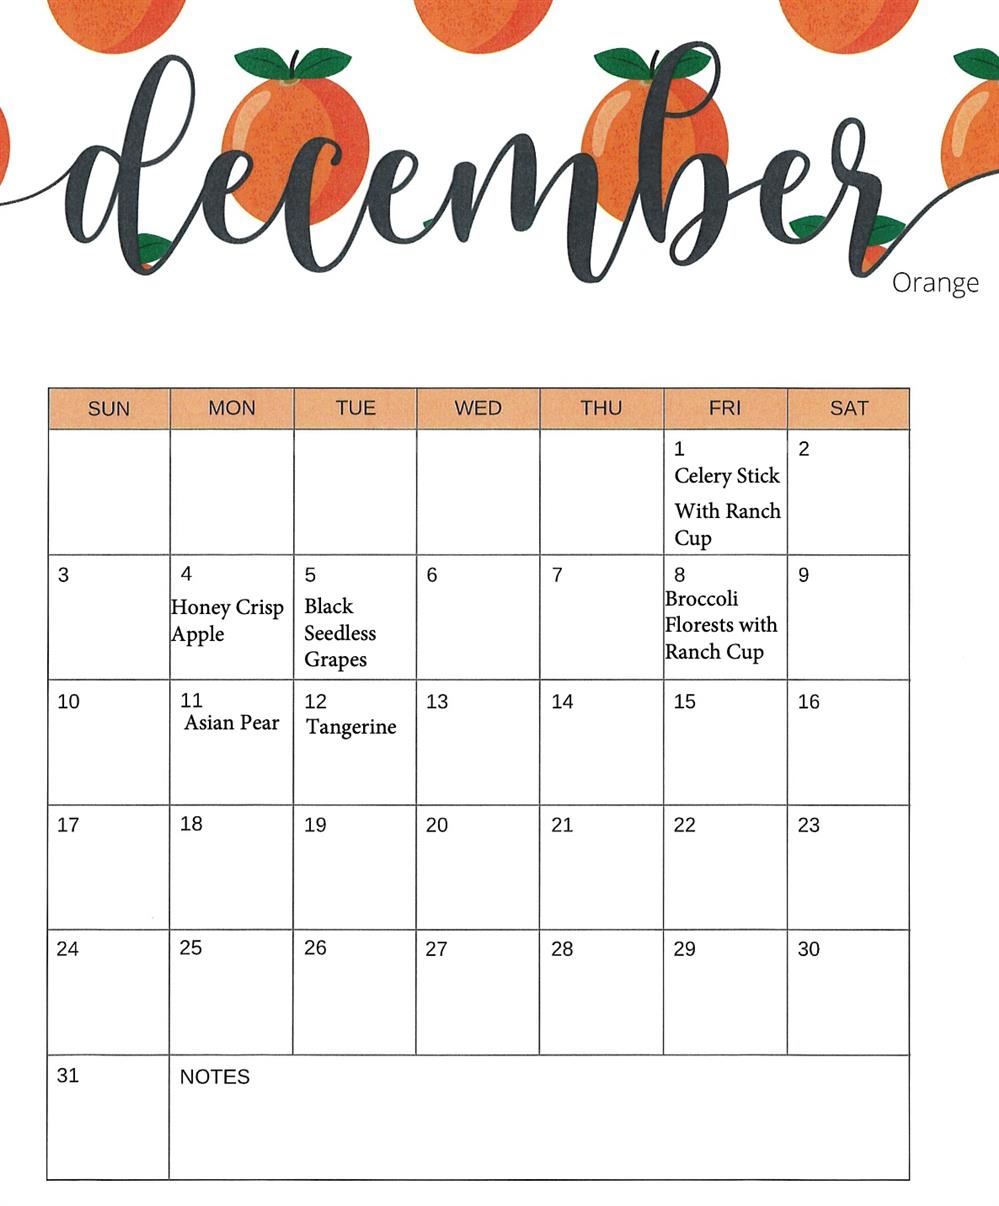  December Fruit and Veg Calendar